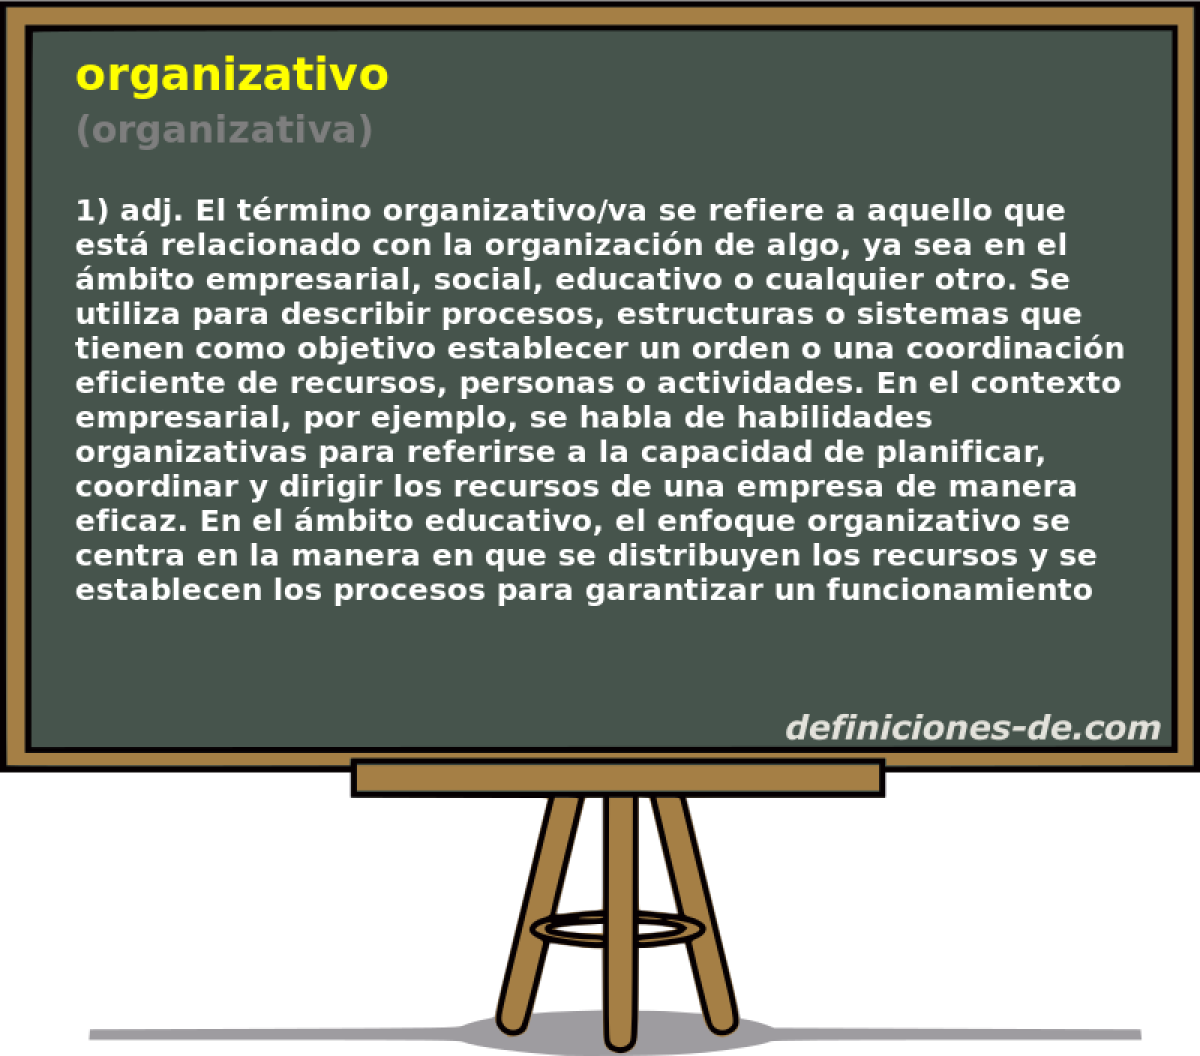 organizativo (organizativa)